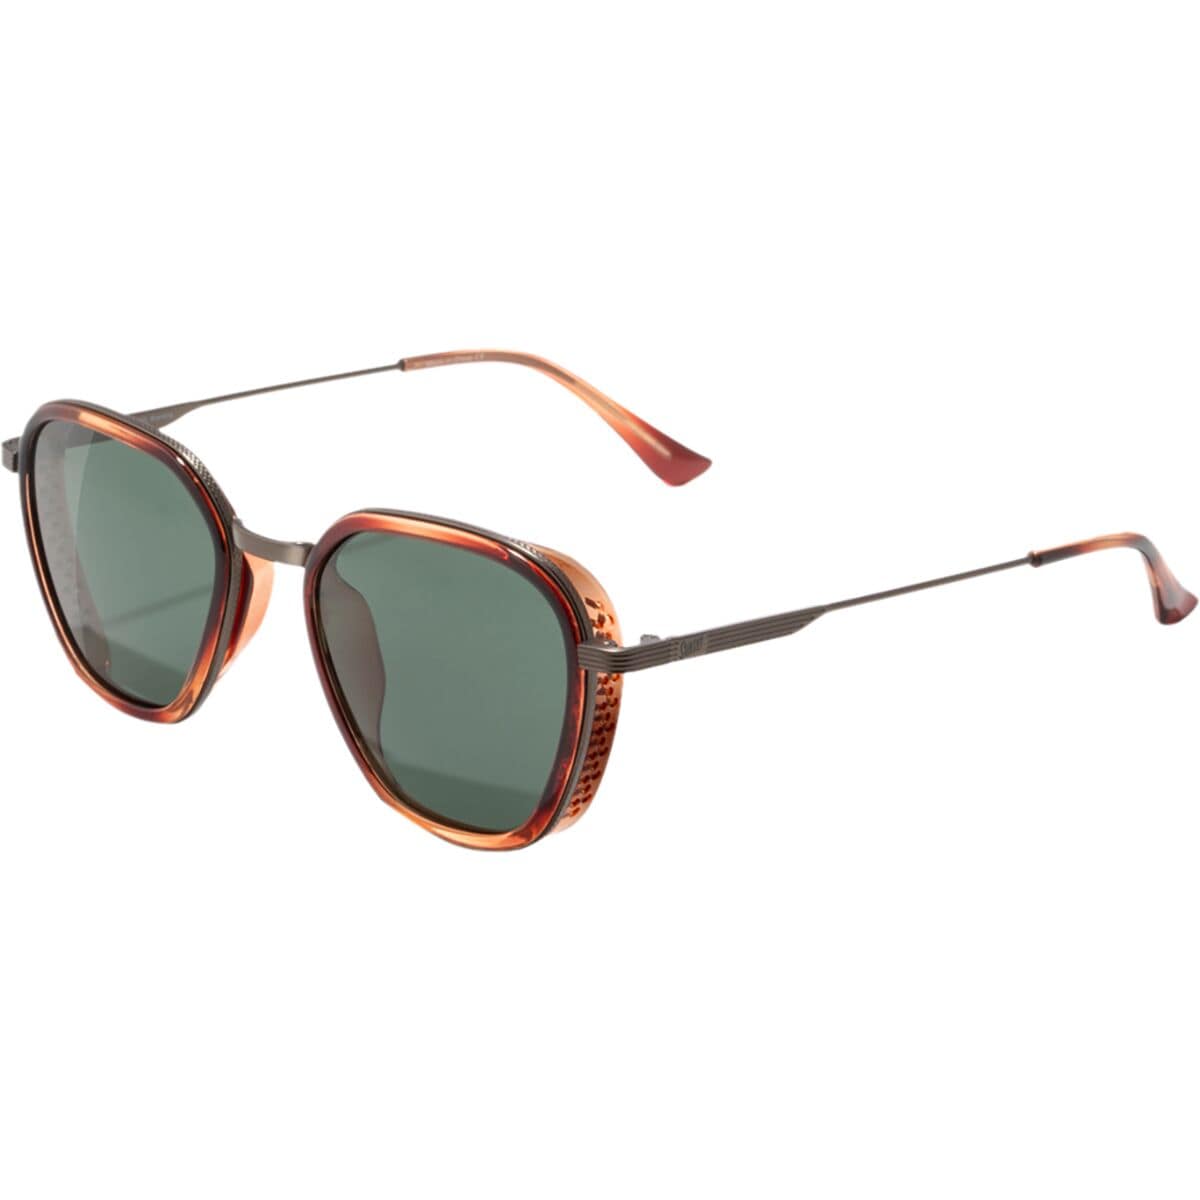 Photos - Sunglasses Bernina Polarized 